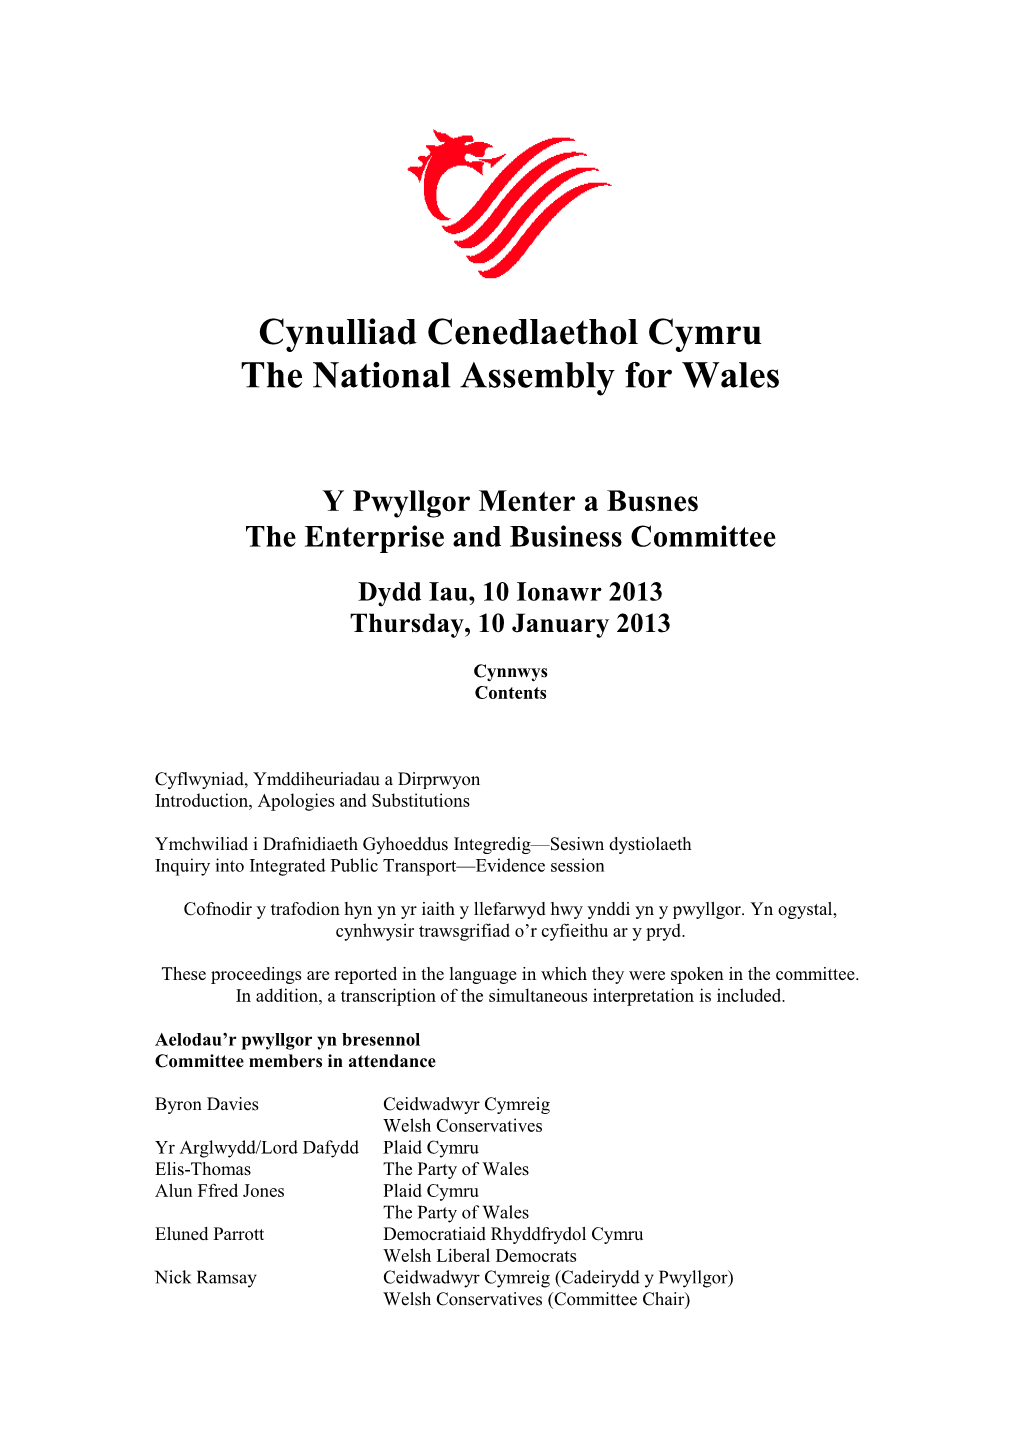 Cynulliad Cenedlaethol Cymru the National Assembly for Wales